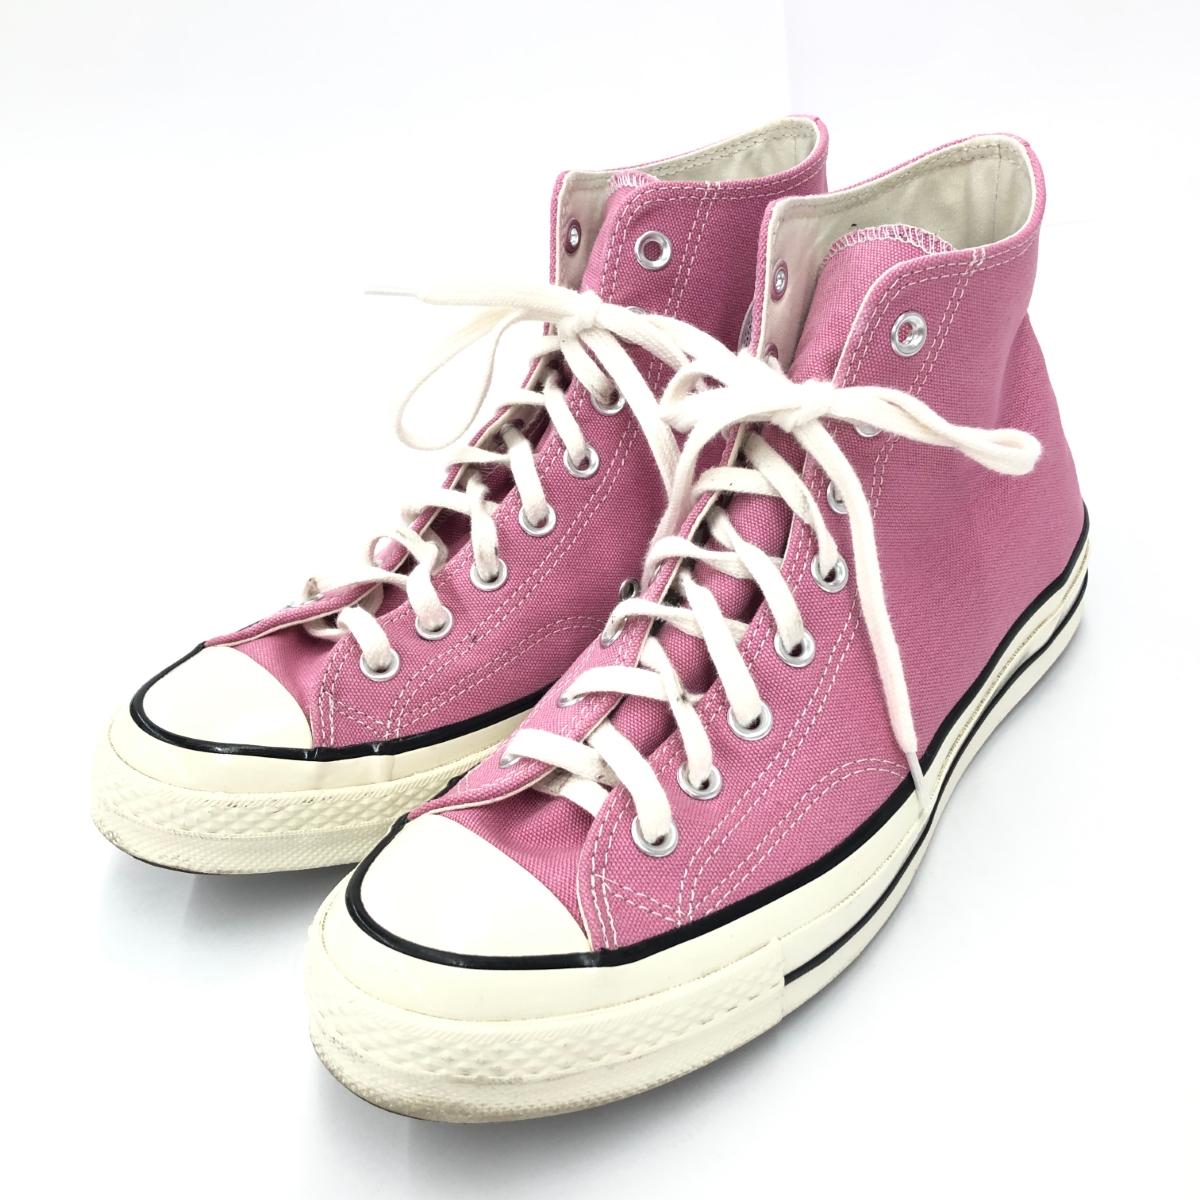 CONVERSE コンバース チャックテイラー スニーカー 9.5 CT70HI ピンク メンズ 靴 シューズ sneakers 【中古】 【202405】